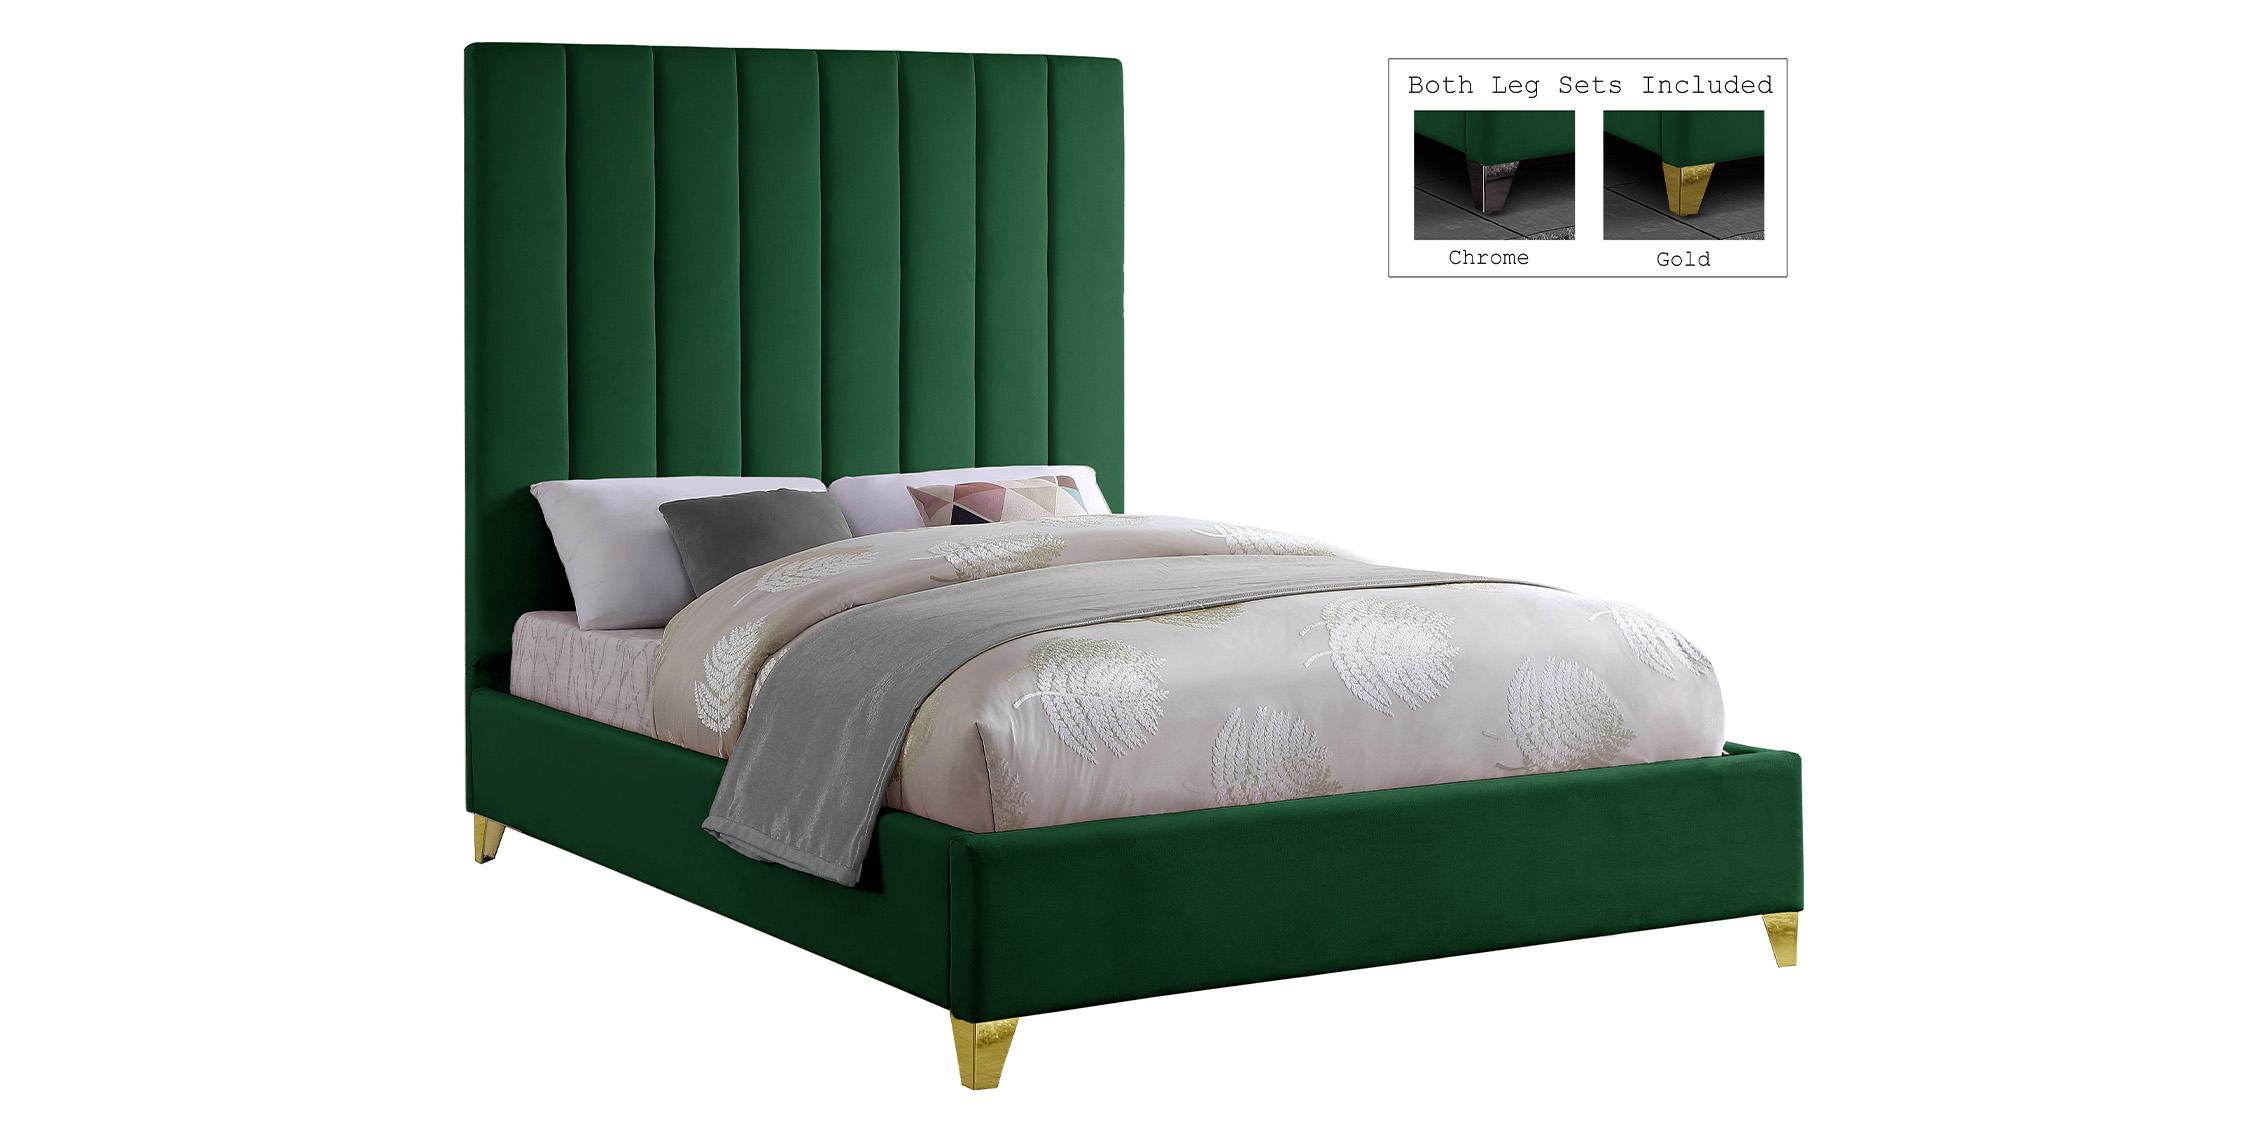 

    
ViaGreen-K Meridian Furniture Platform Bed
